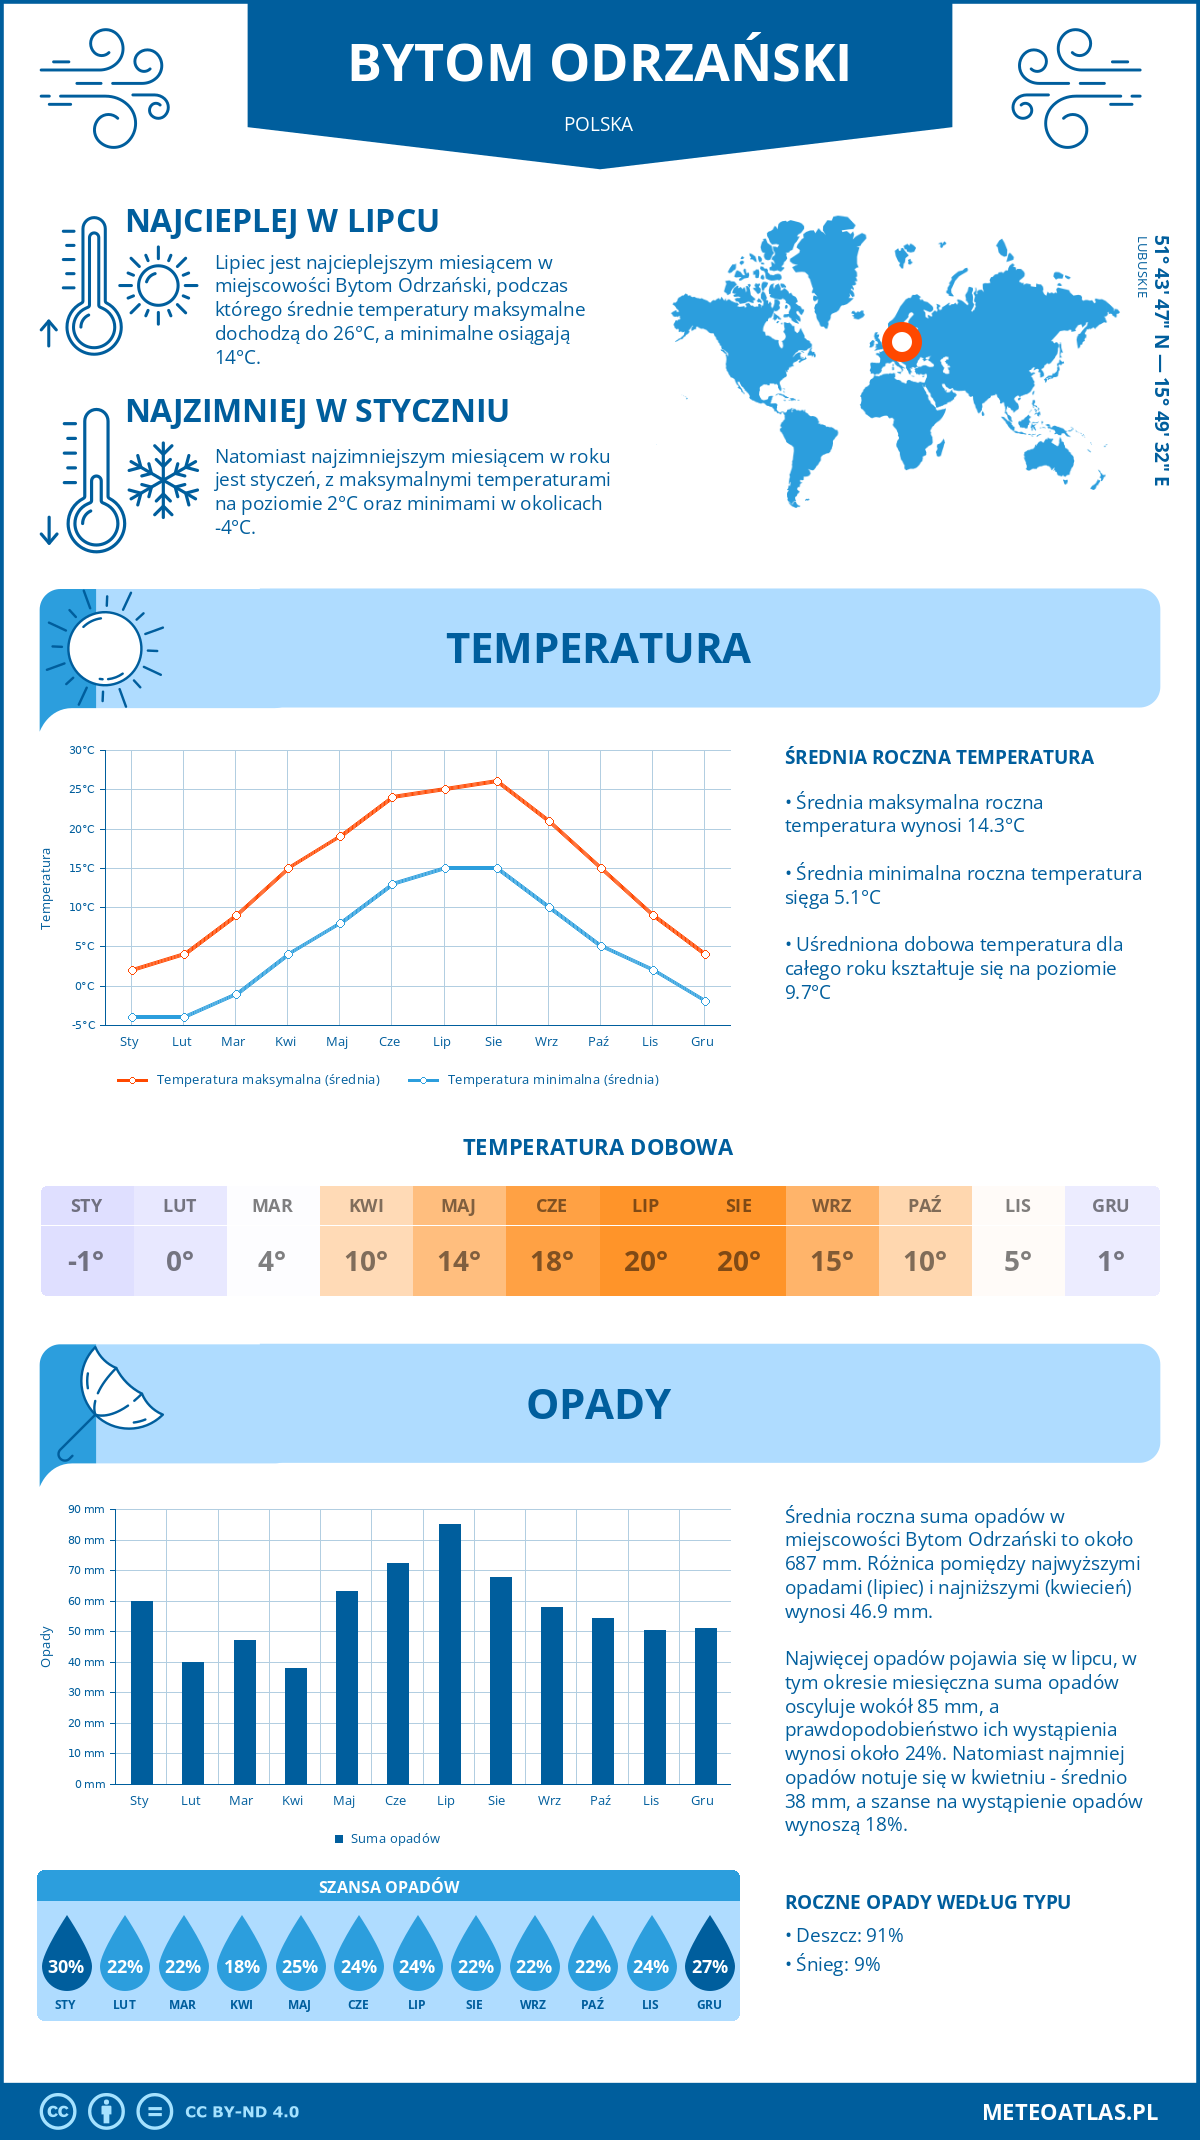 Pogoda Bytom Odrzański (Polska). Temperatura oraz opady.